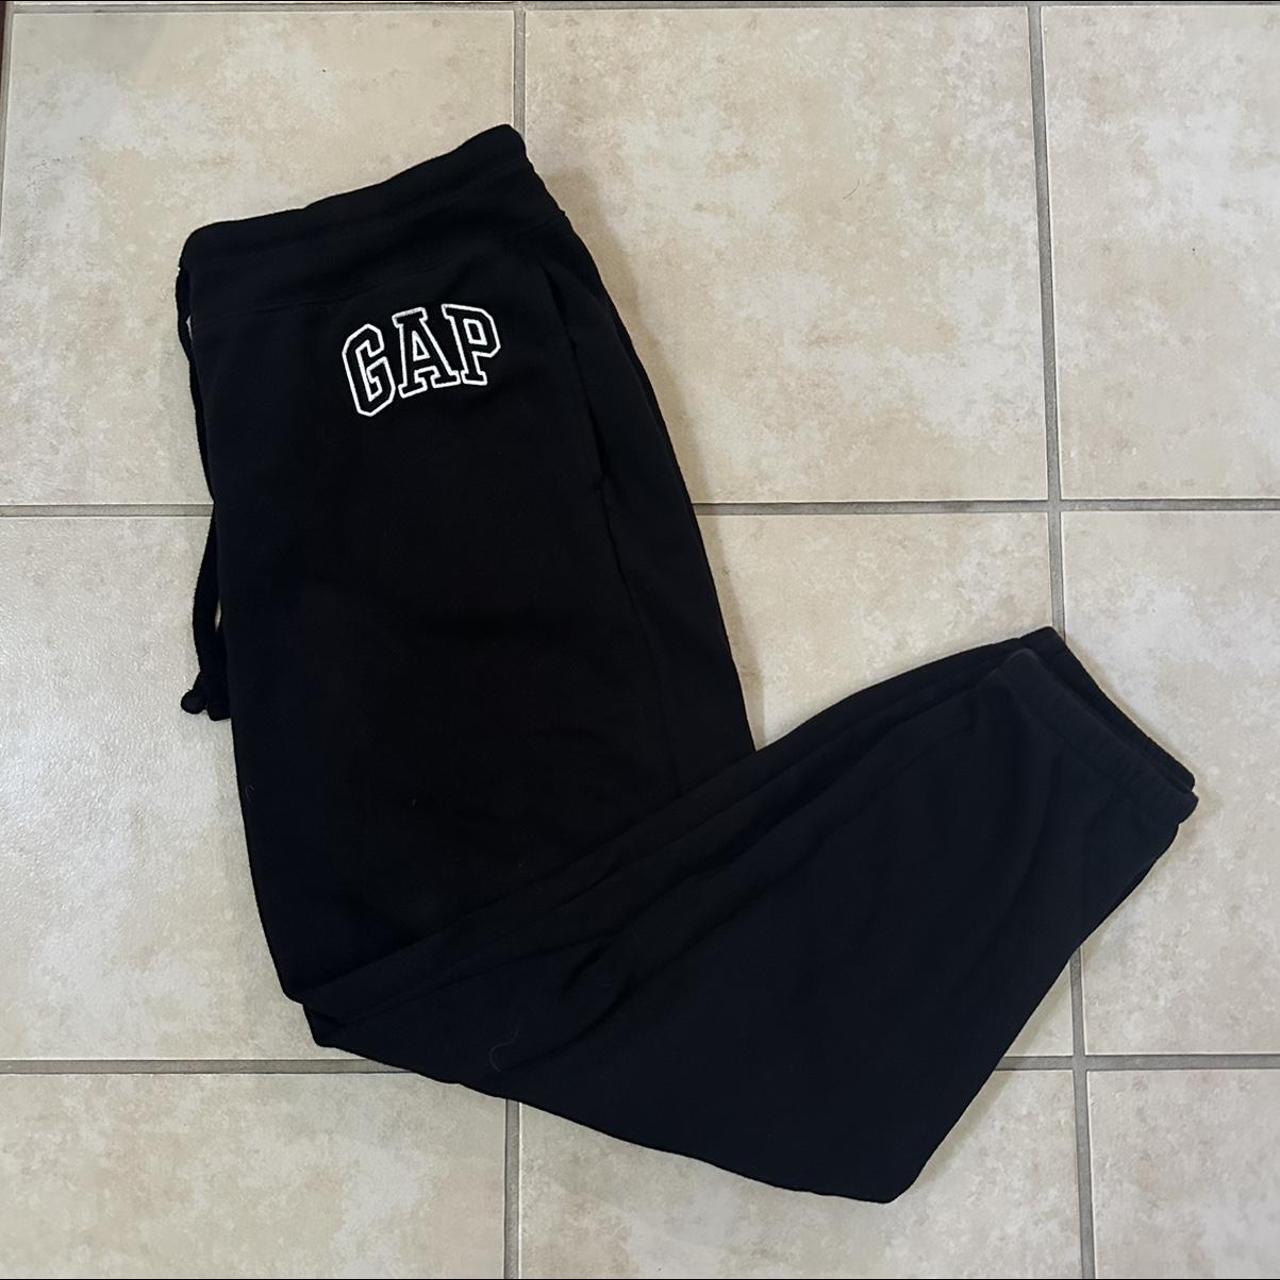 black gap sweatpants so comfy and cute size L #gap - Depop